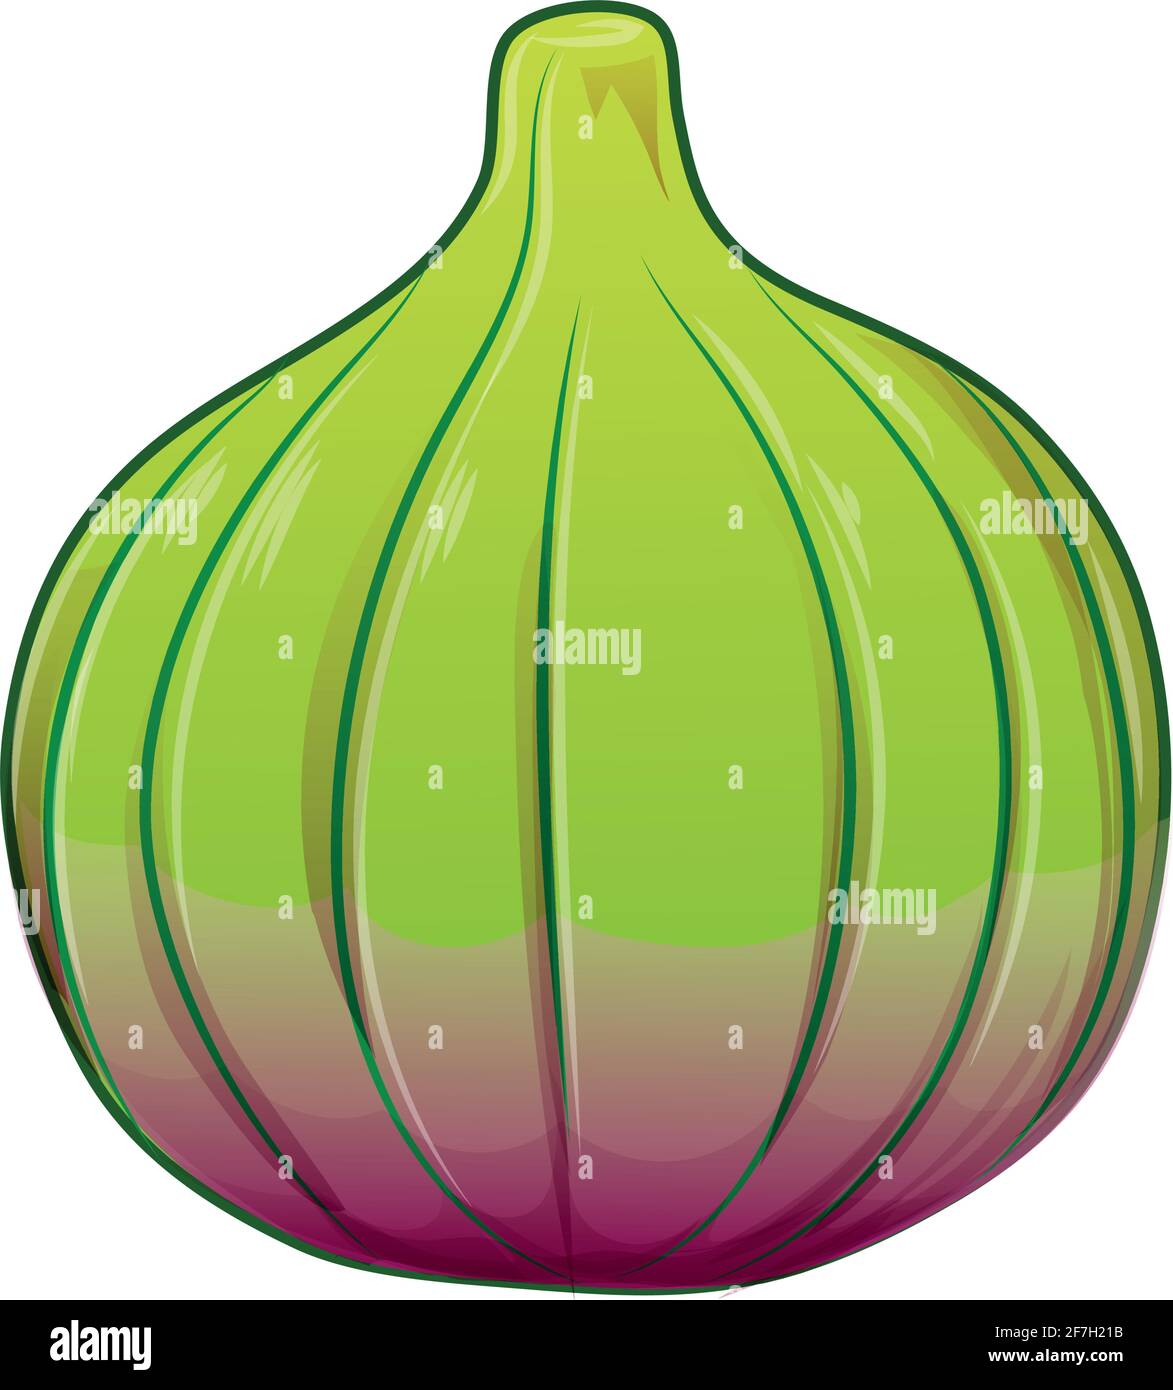 Feige, lila ganze Frucht . Vektor-Illustration Cartoon flach isoliert auf weiß. Stock Vektor